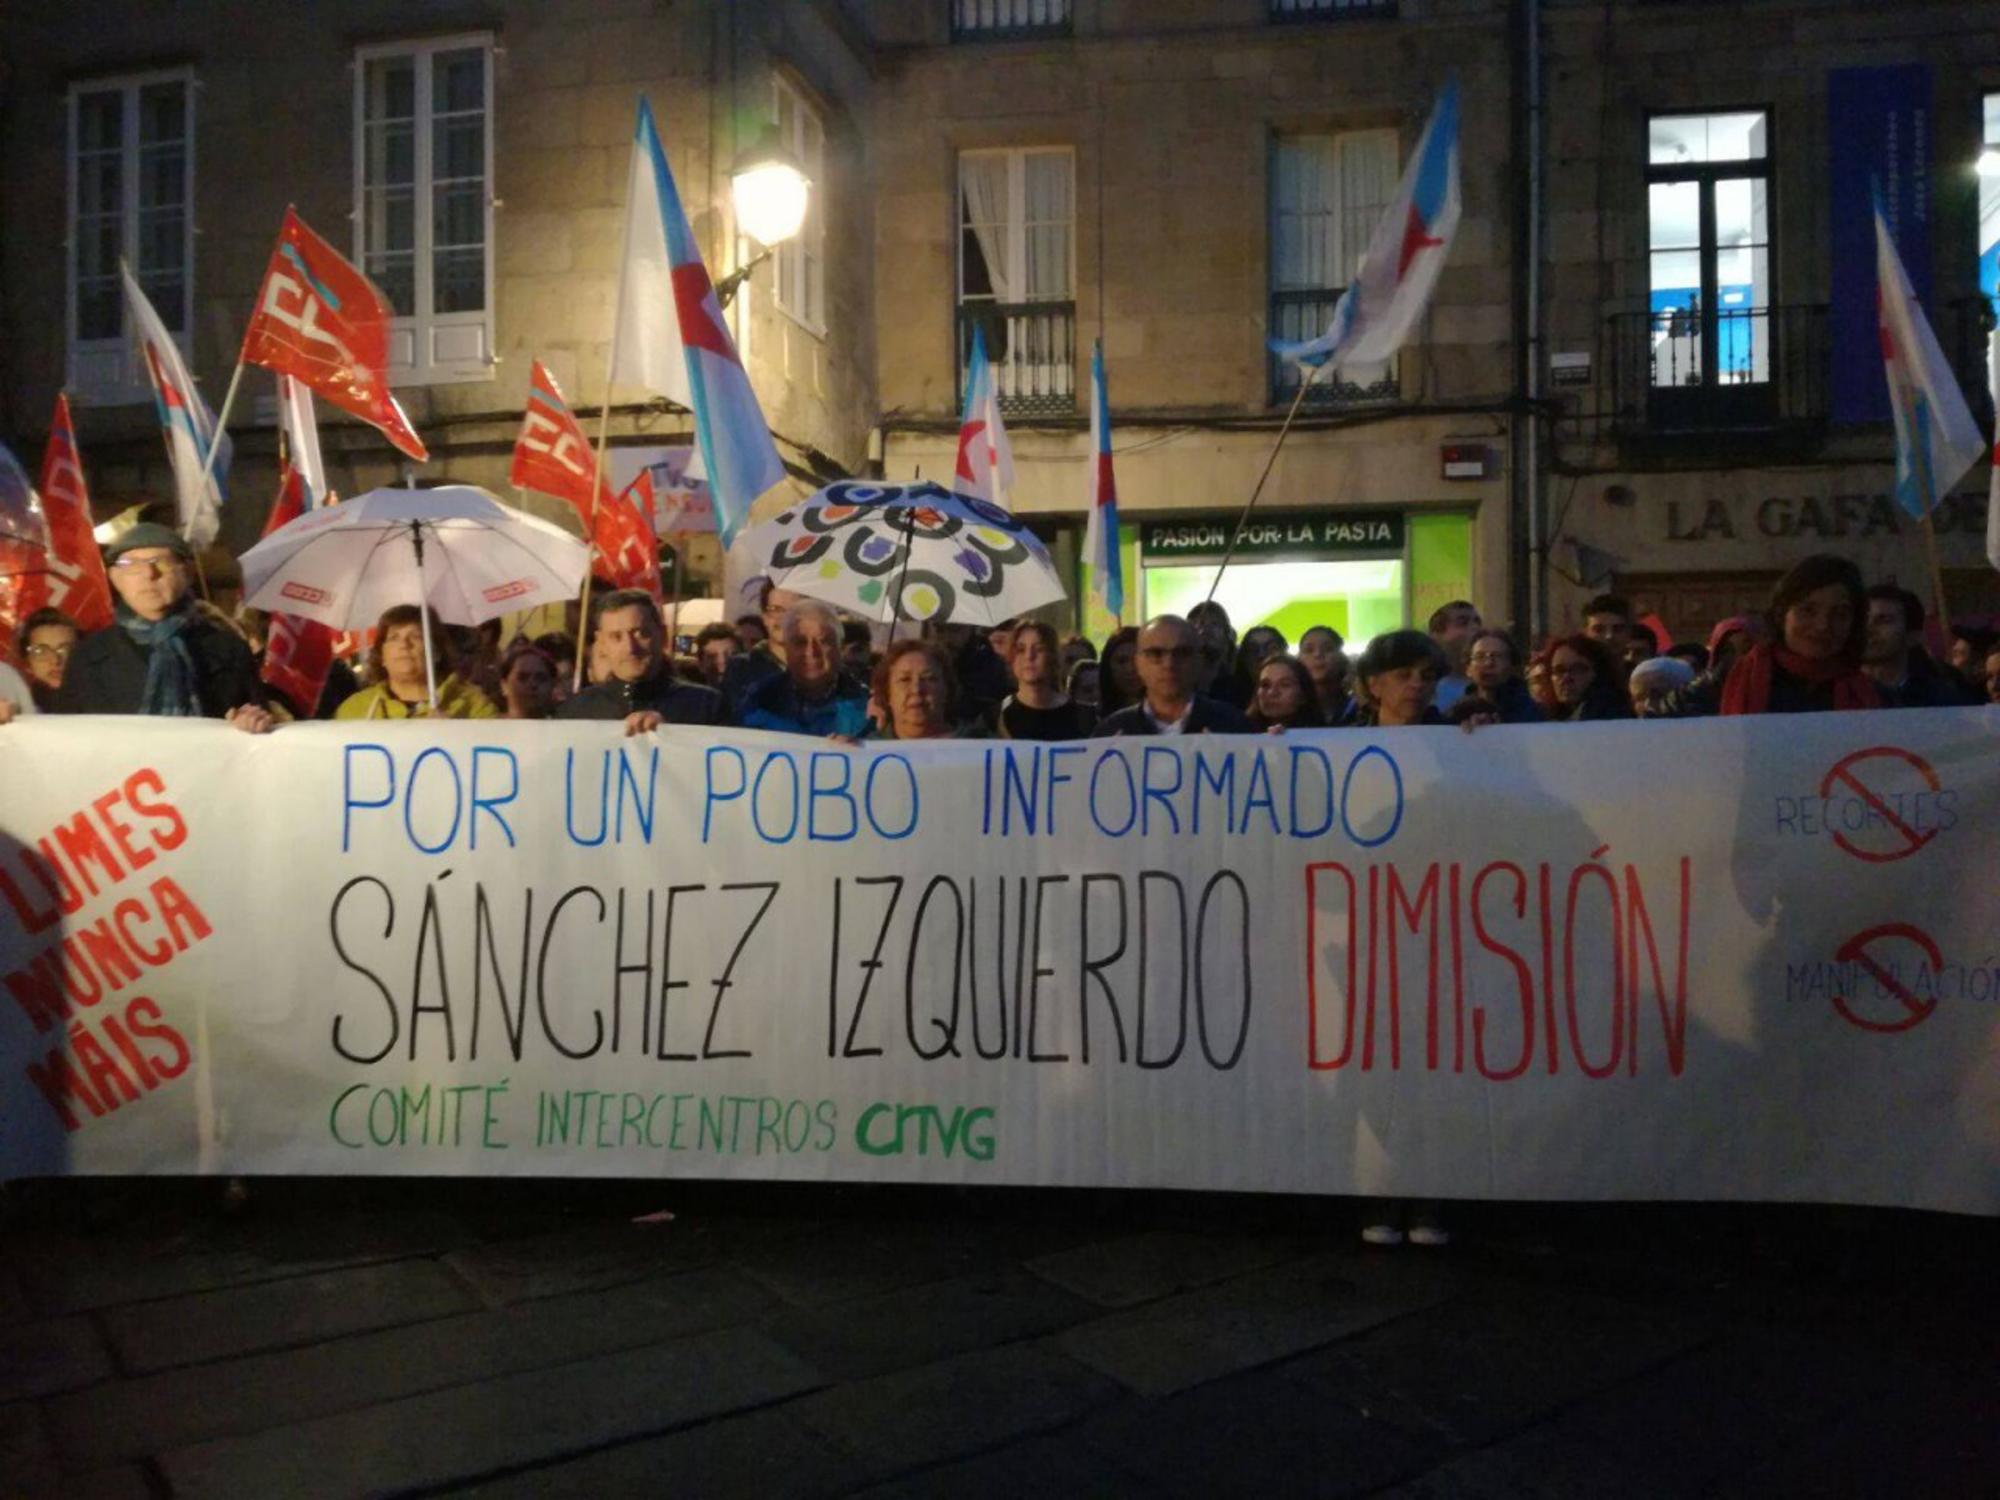 TVG mobilización Sanchez Izquierdo dimisión